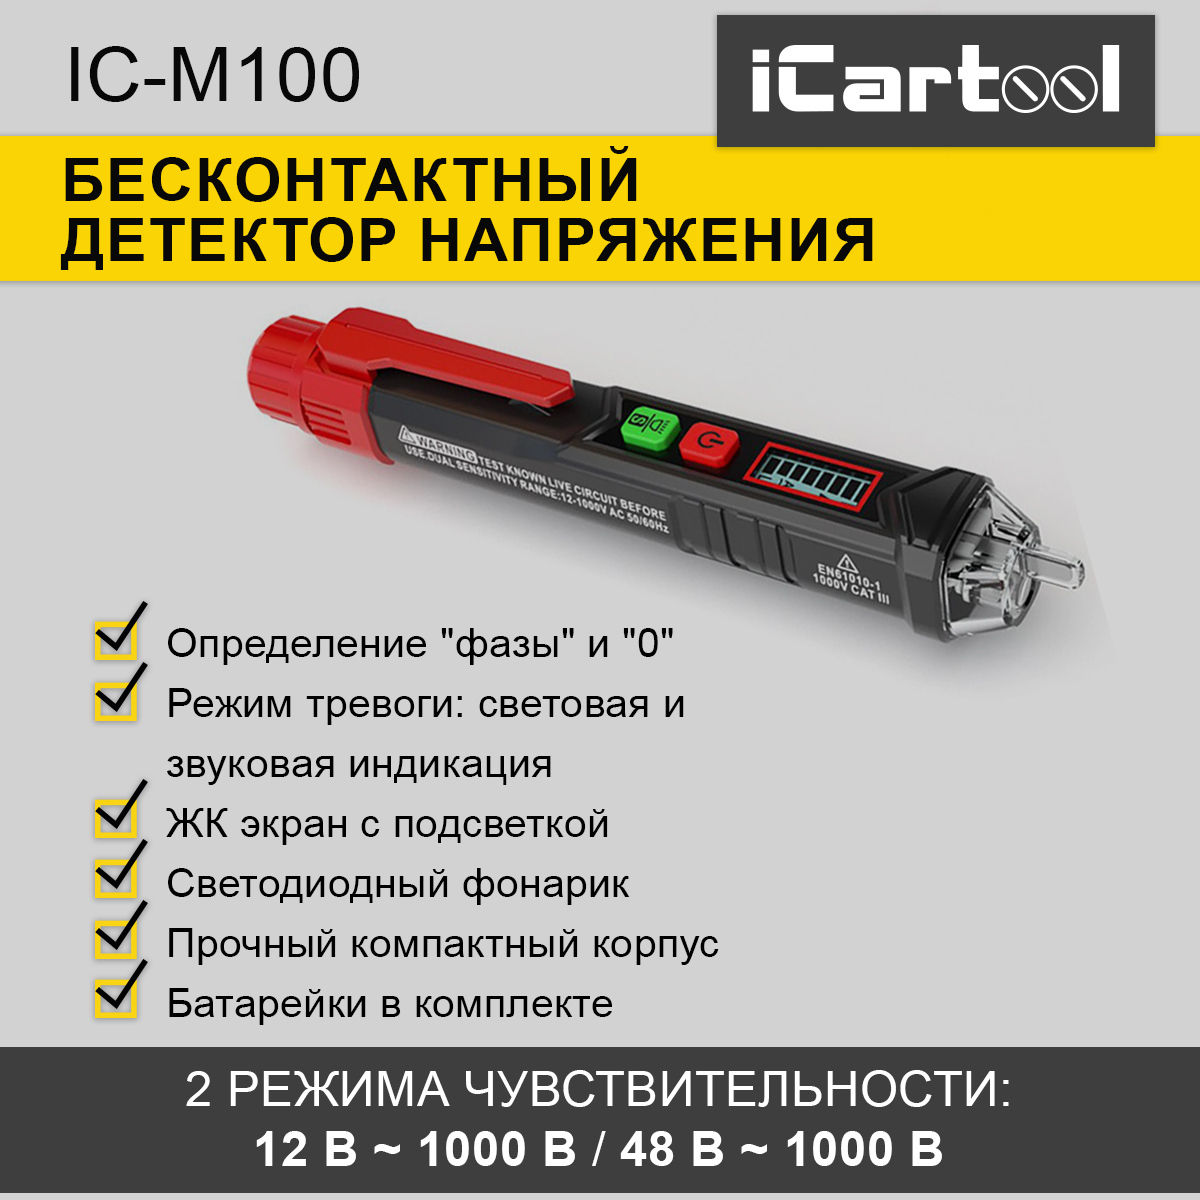 Бесконтактный детектор напряжения iCartool IC-M100 индикаторная отвертка тестер кедр